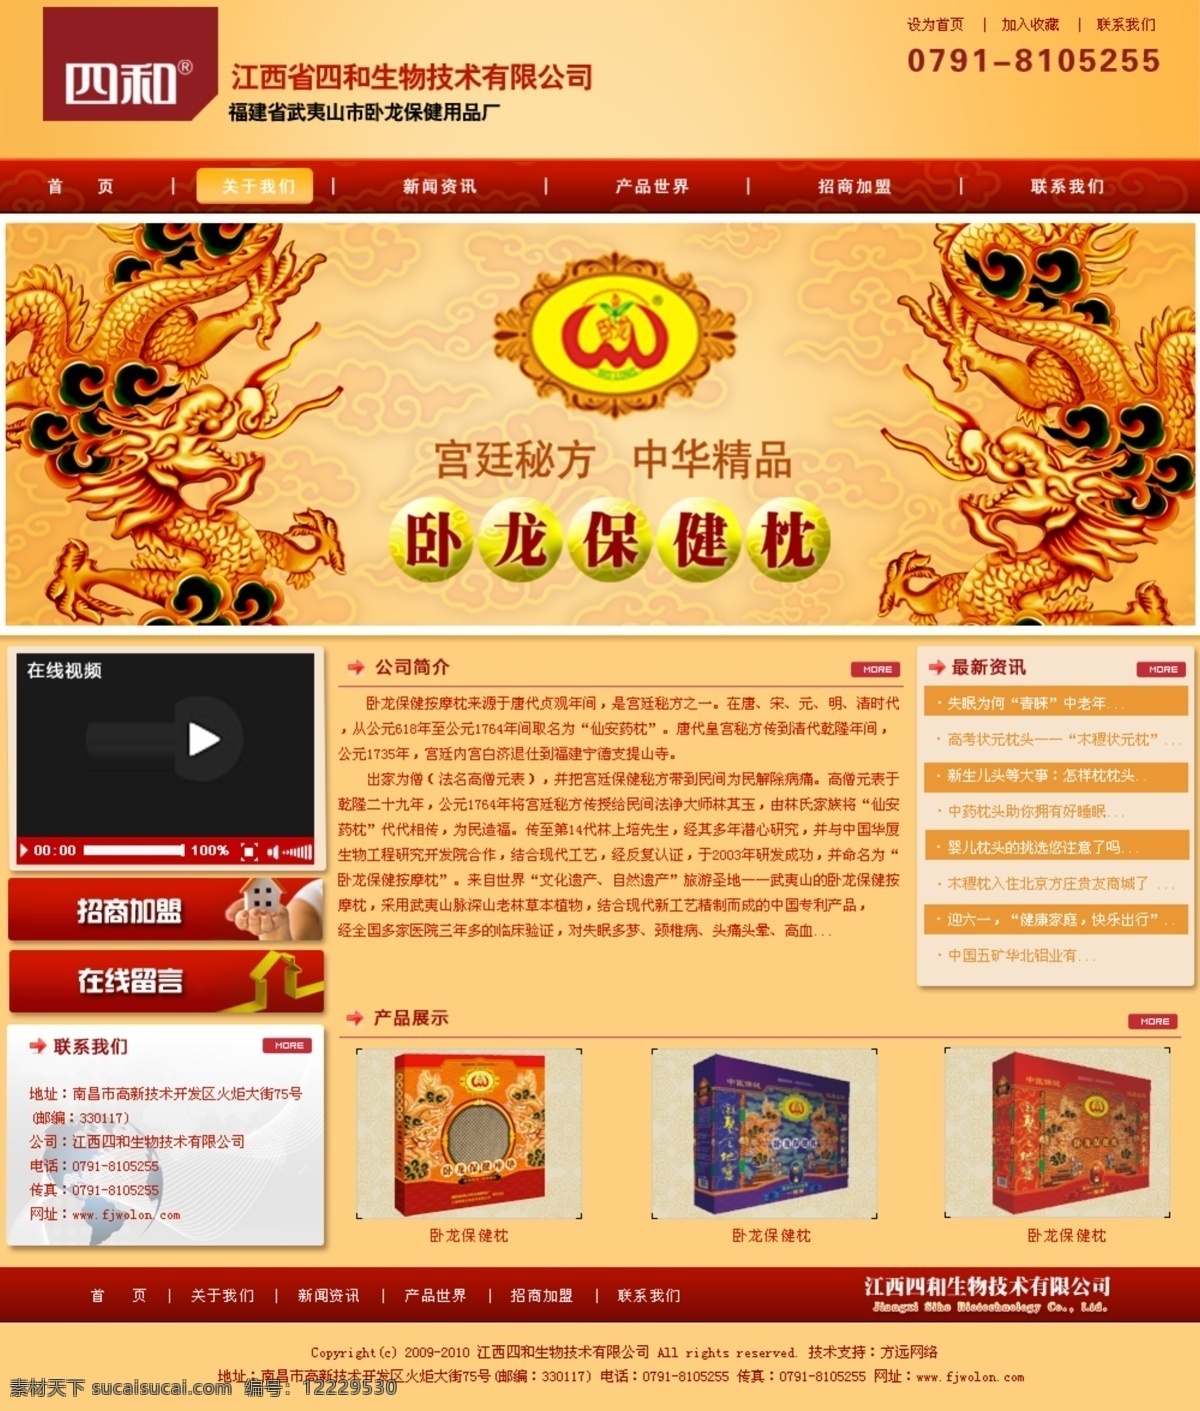 生物技术 产品 网页 龙 网页模板 源文件 中文模版 产品网页模板 网页素材